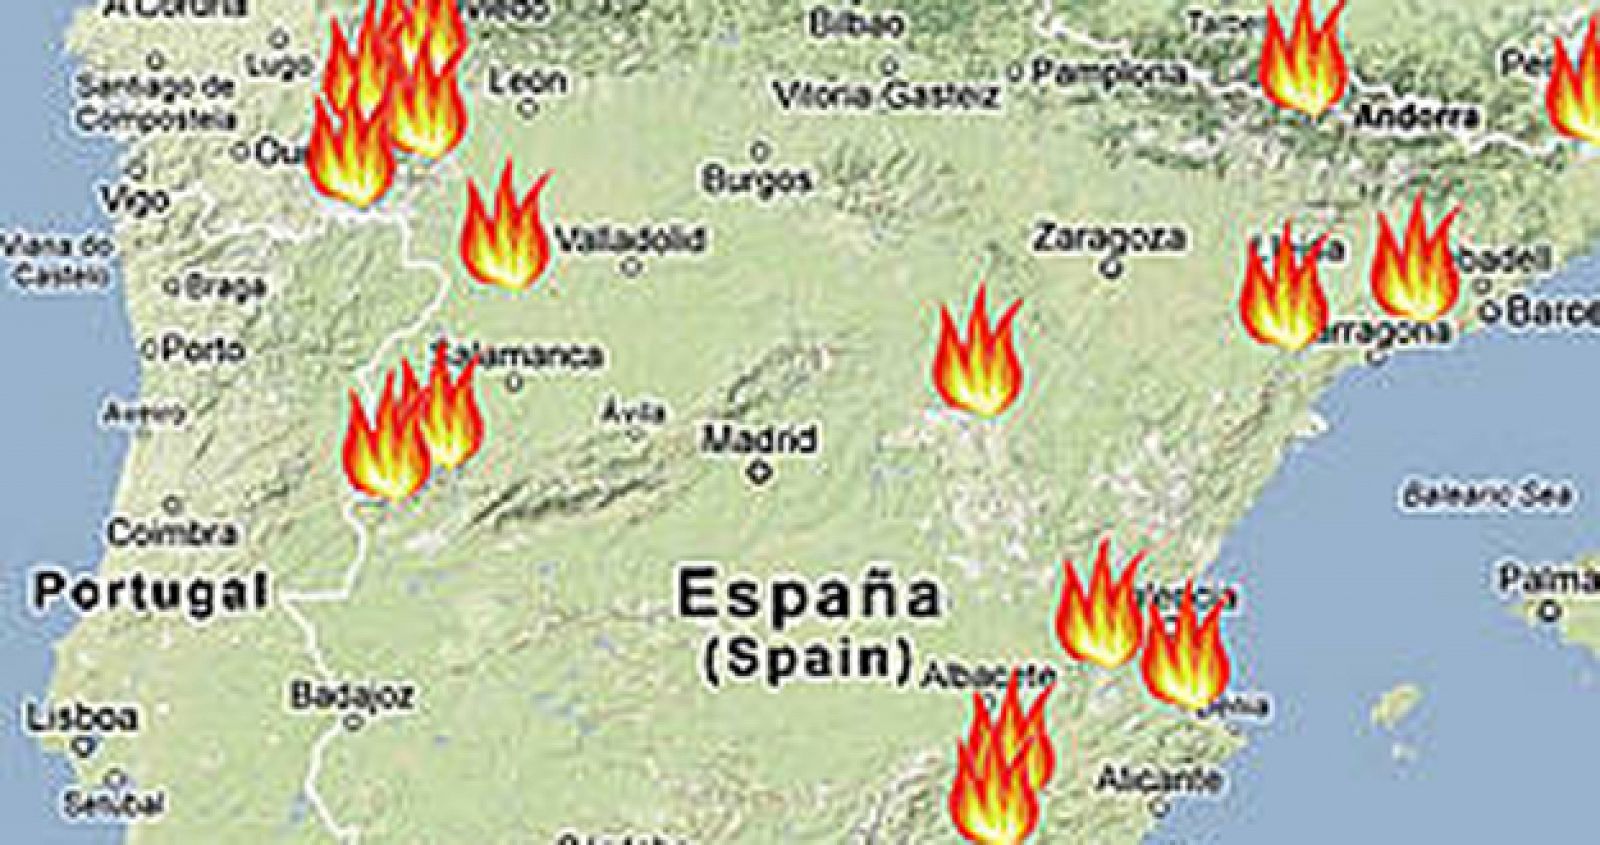 La ONG ecologista WWF ha hecho un "mapa del fuego" donde aparecen los grandes incendios producidos en España durante este año.